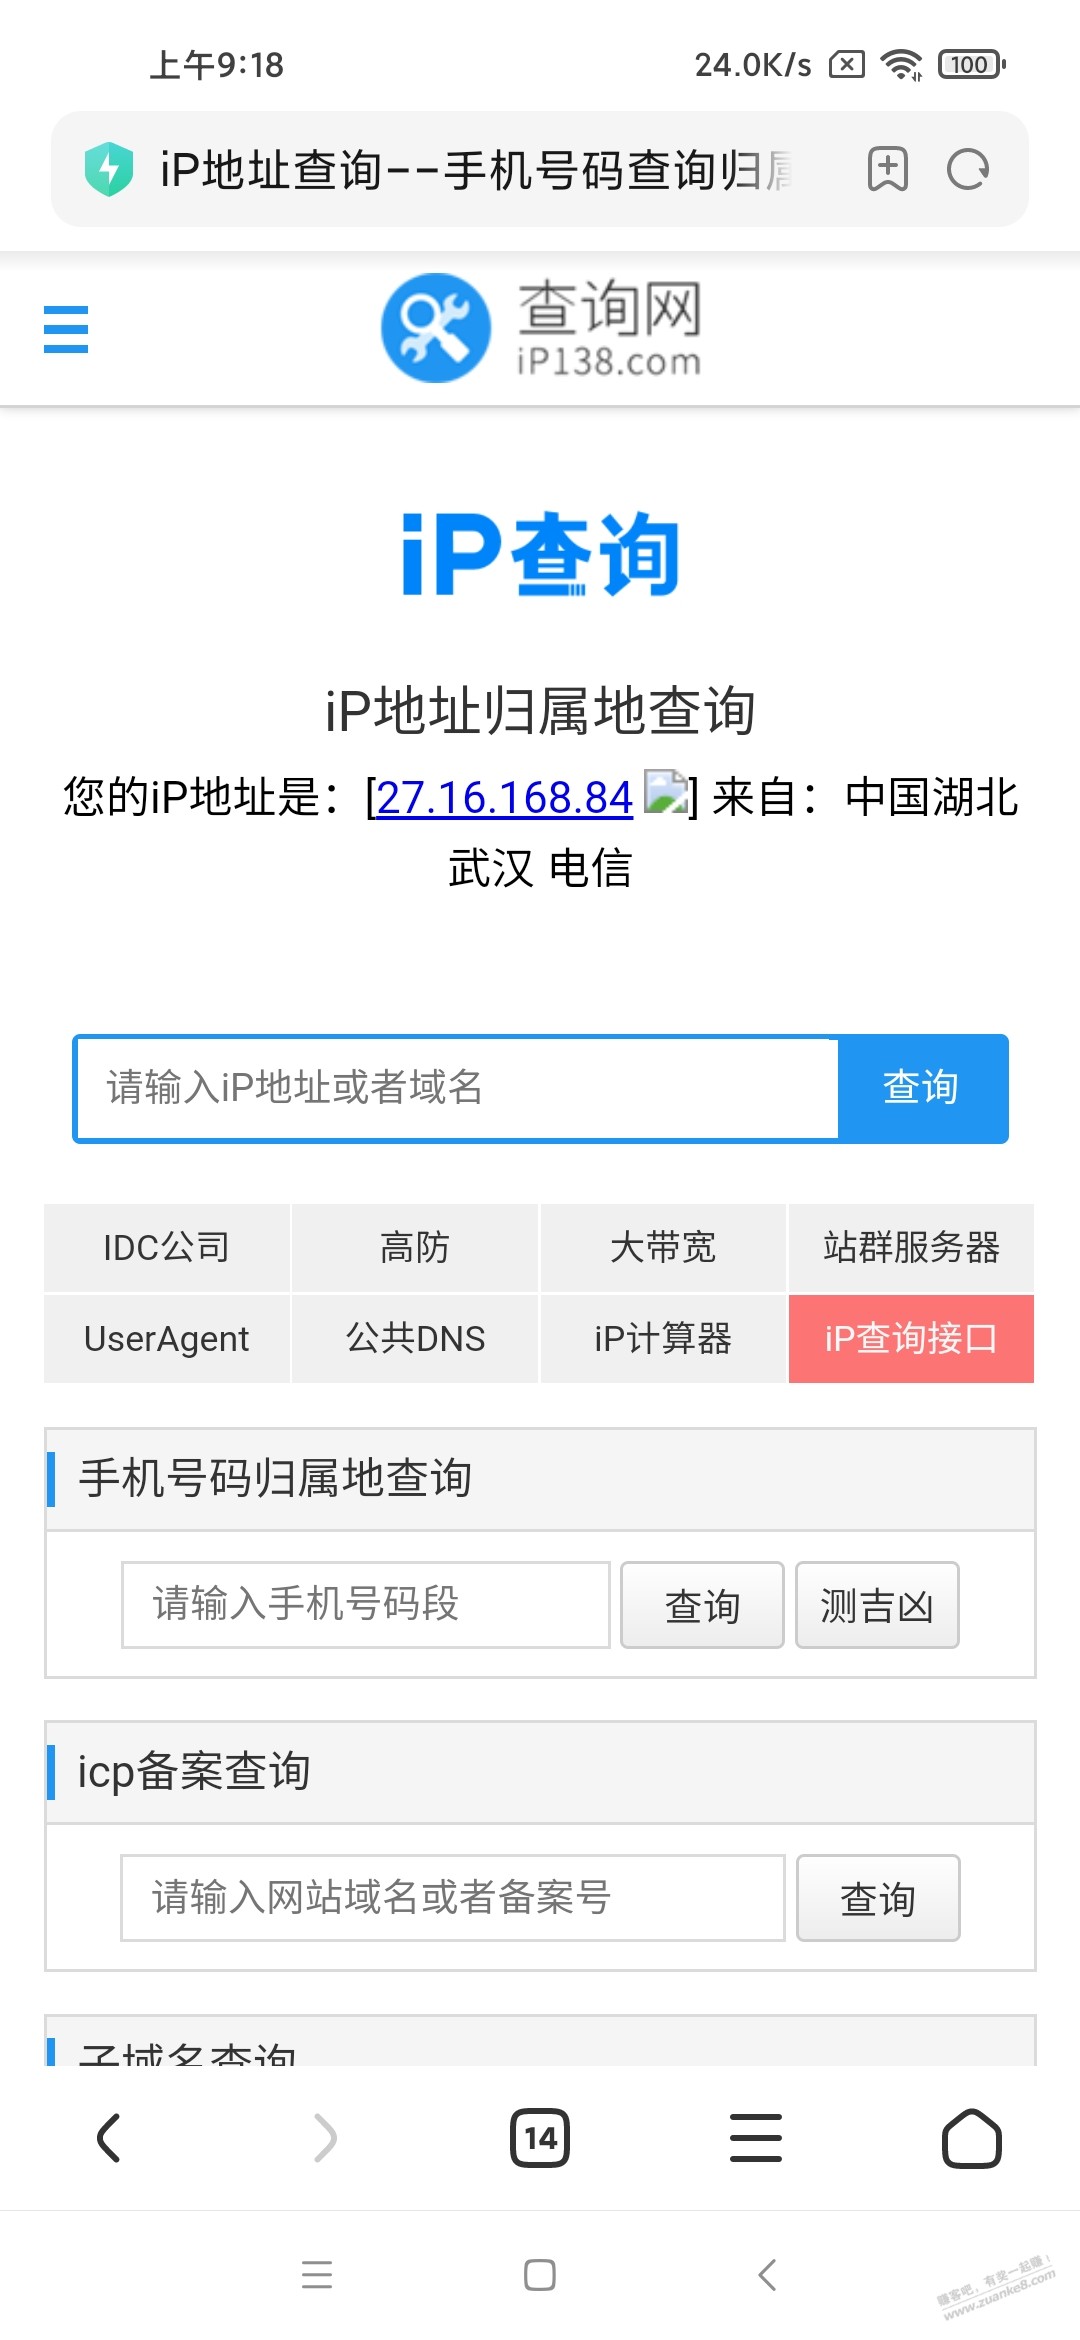 大家看看武汉电信的公网IP是不是假公网ip